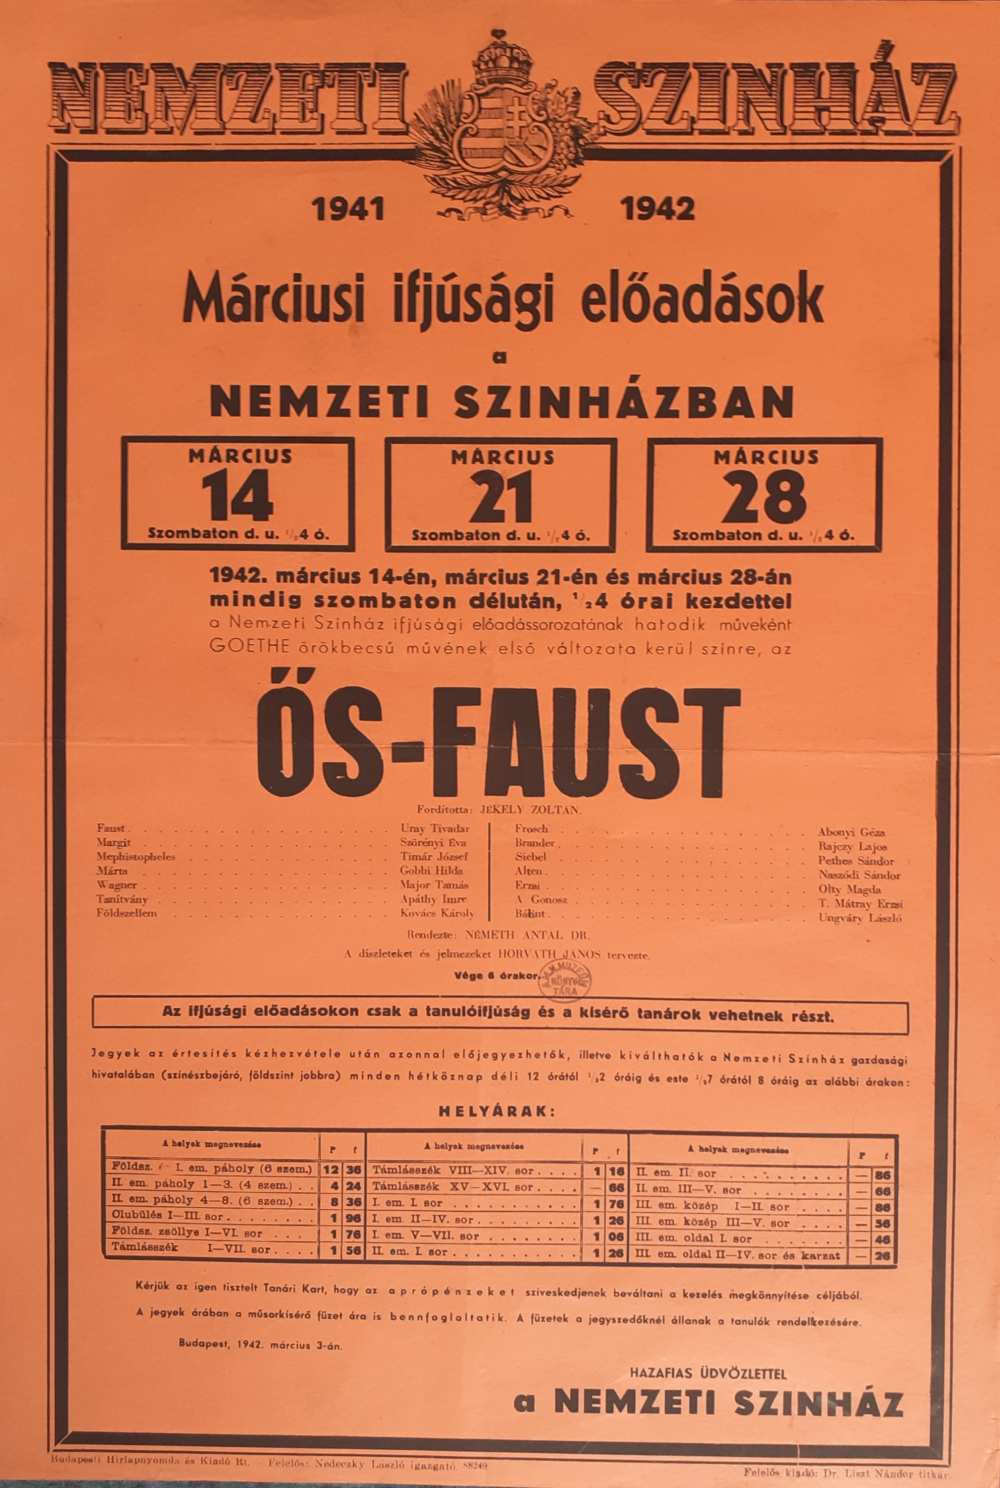 Ős-Faust. Ifjúsági előadás. Nemzeti Színház, 1942. március 14., 21., 28. Színlap – Színháztörténeti és Zeneműtár